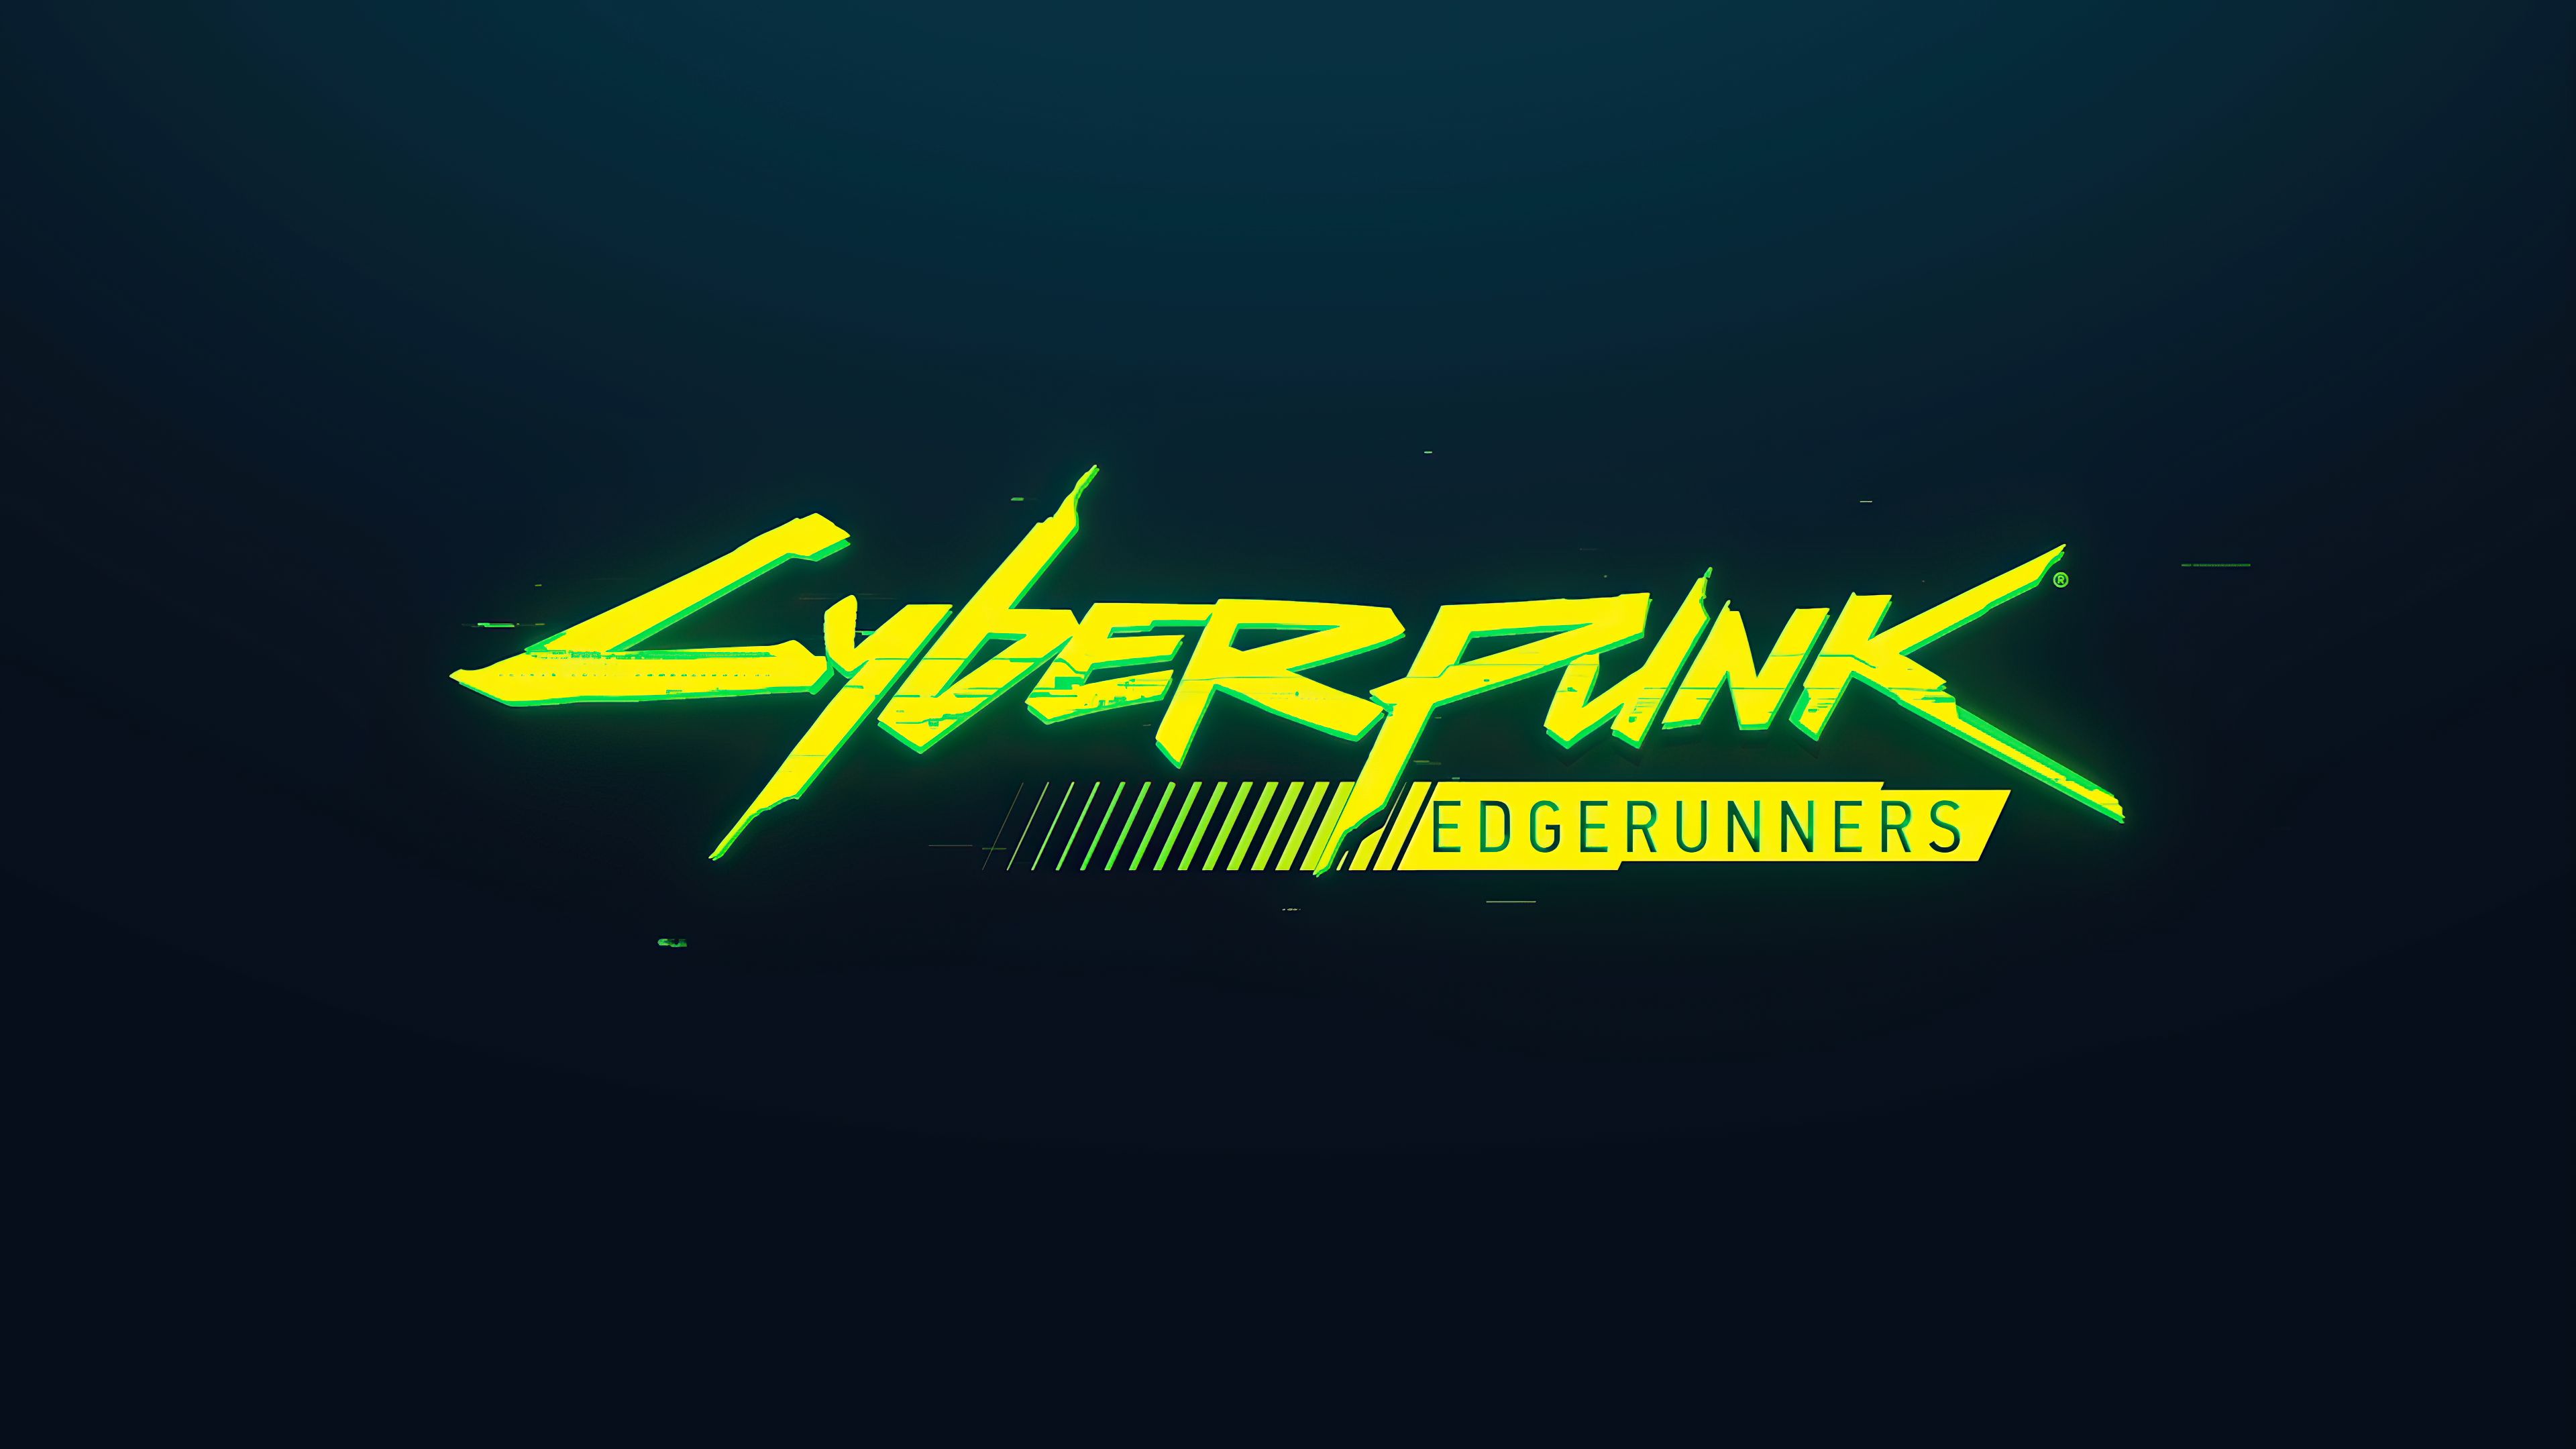 Cyberpunk 2077, Cyberpunk edgerunners, Wallpapers Free Download